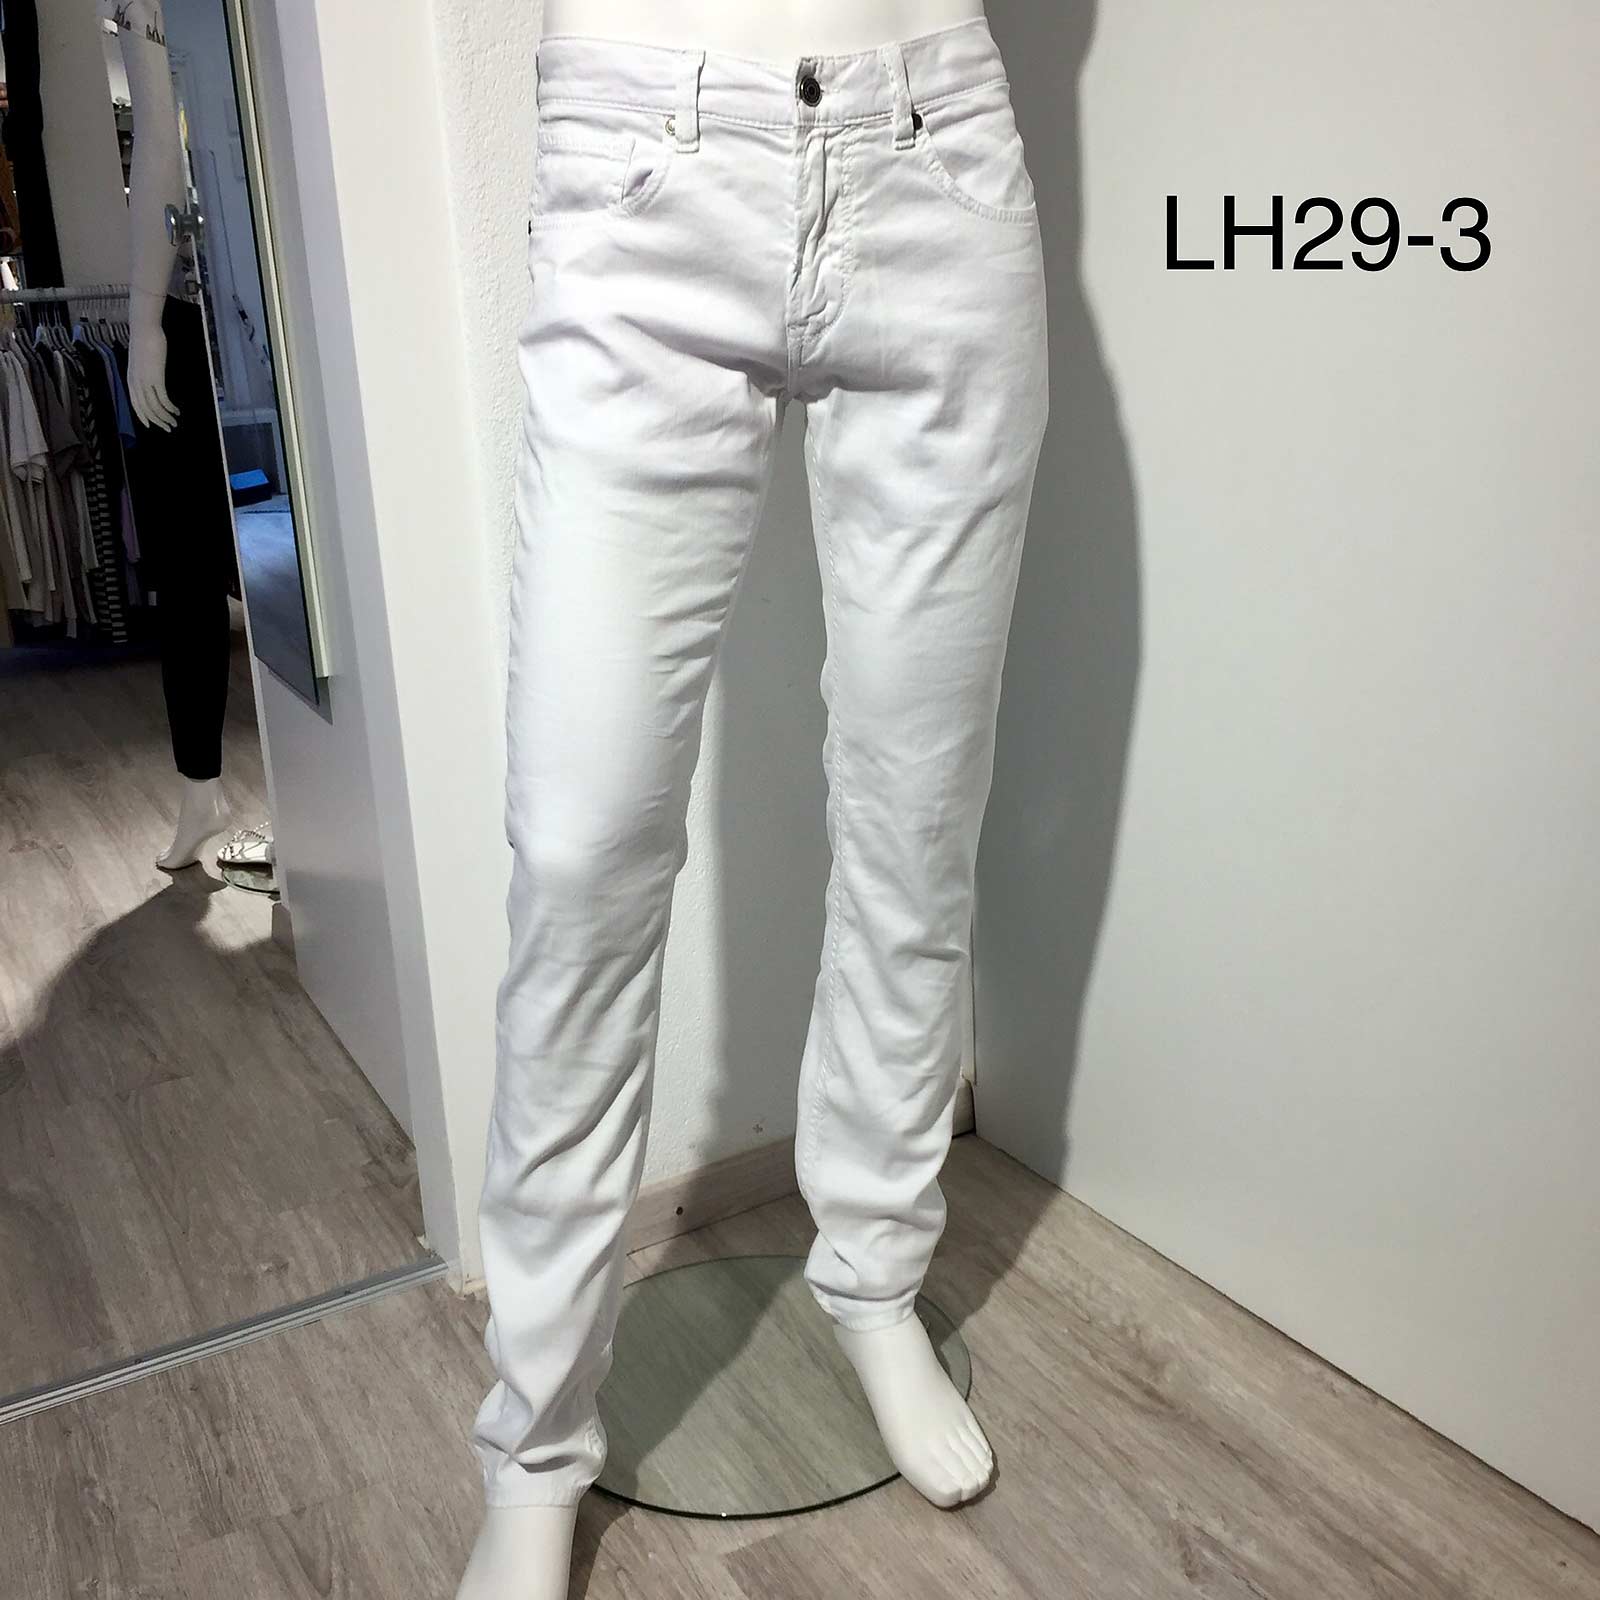 Herren - Look 29-3 | Jeans